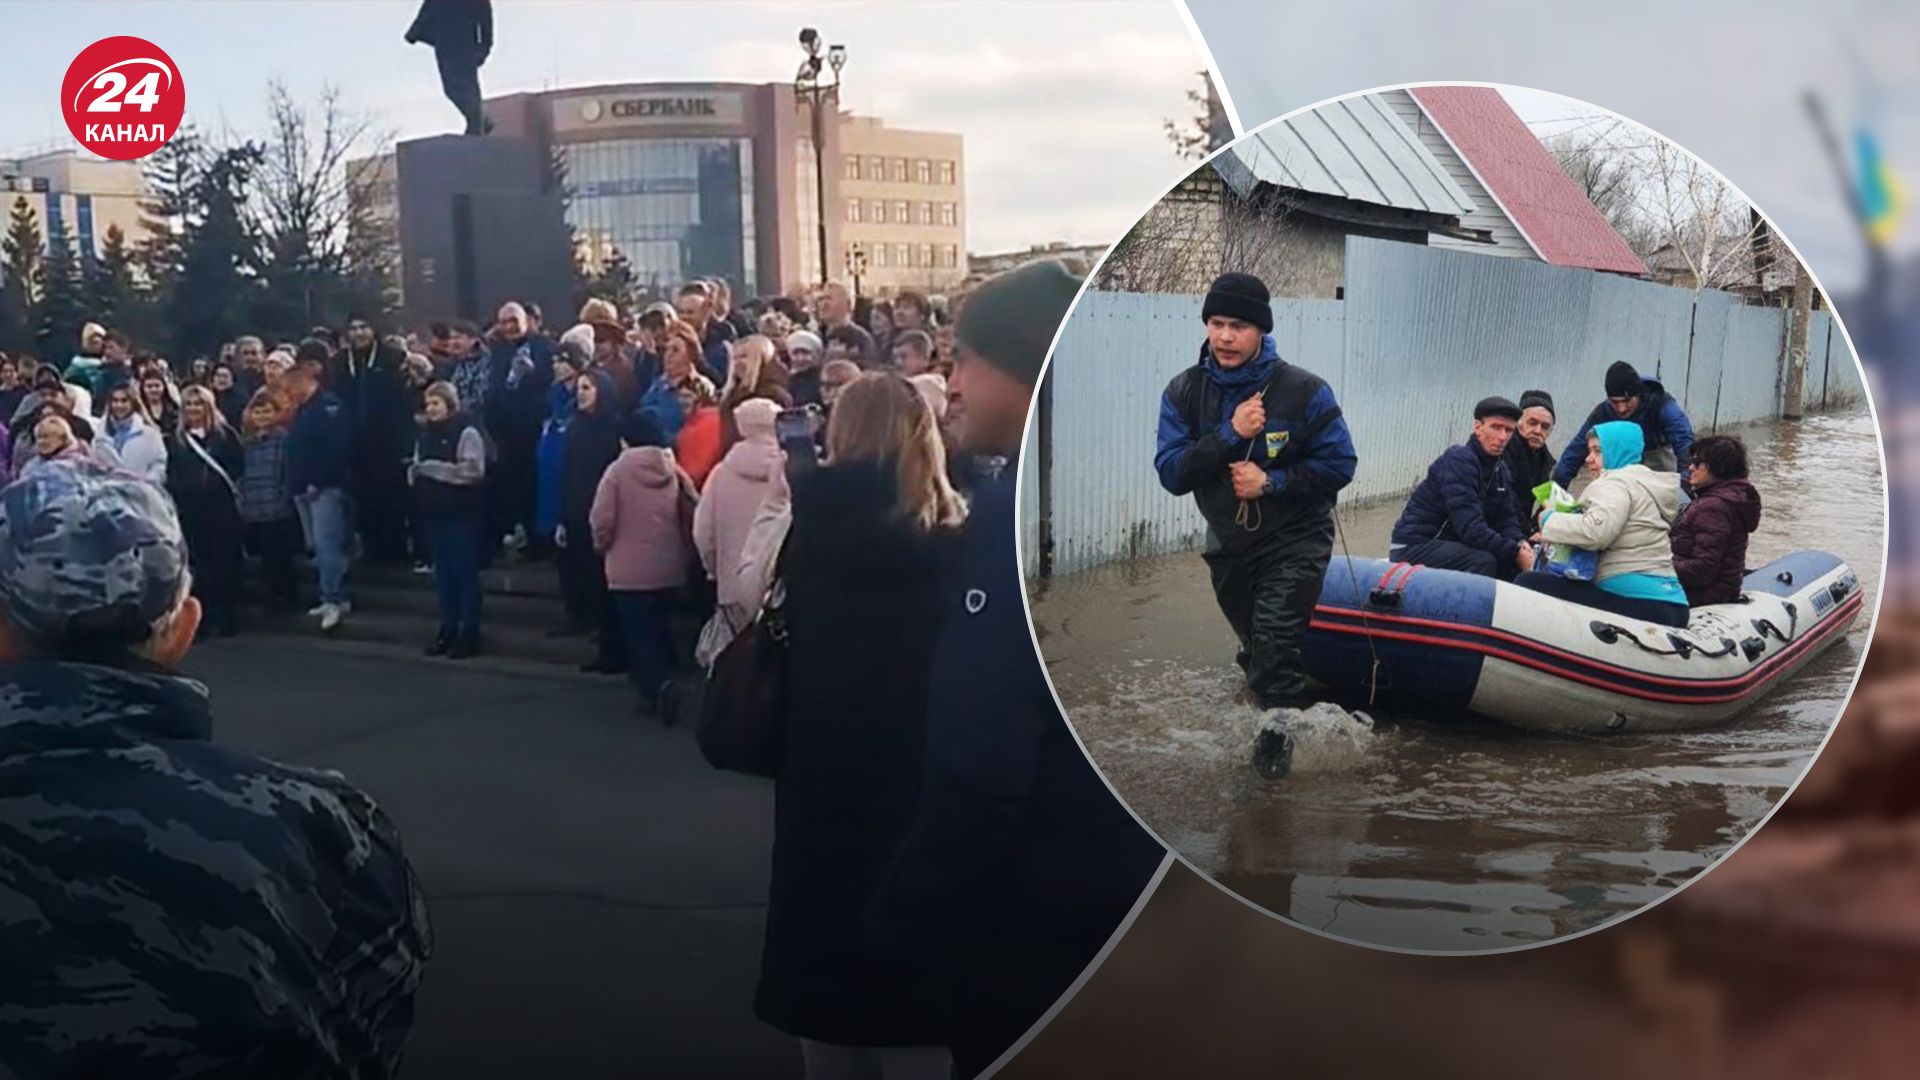 "Путин, помоги": жители затопленного Орска вышли на протест, полиция хочет разогнать - 24 Канал